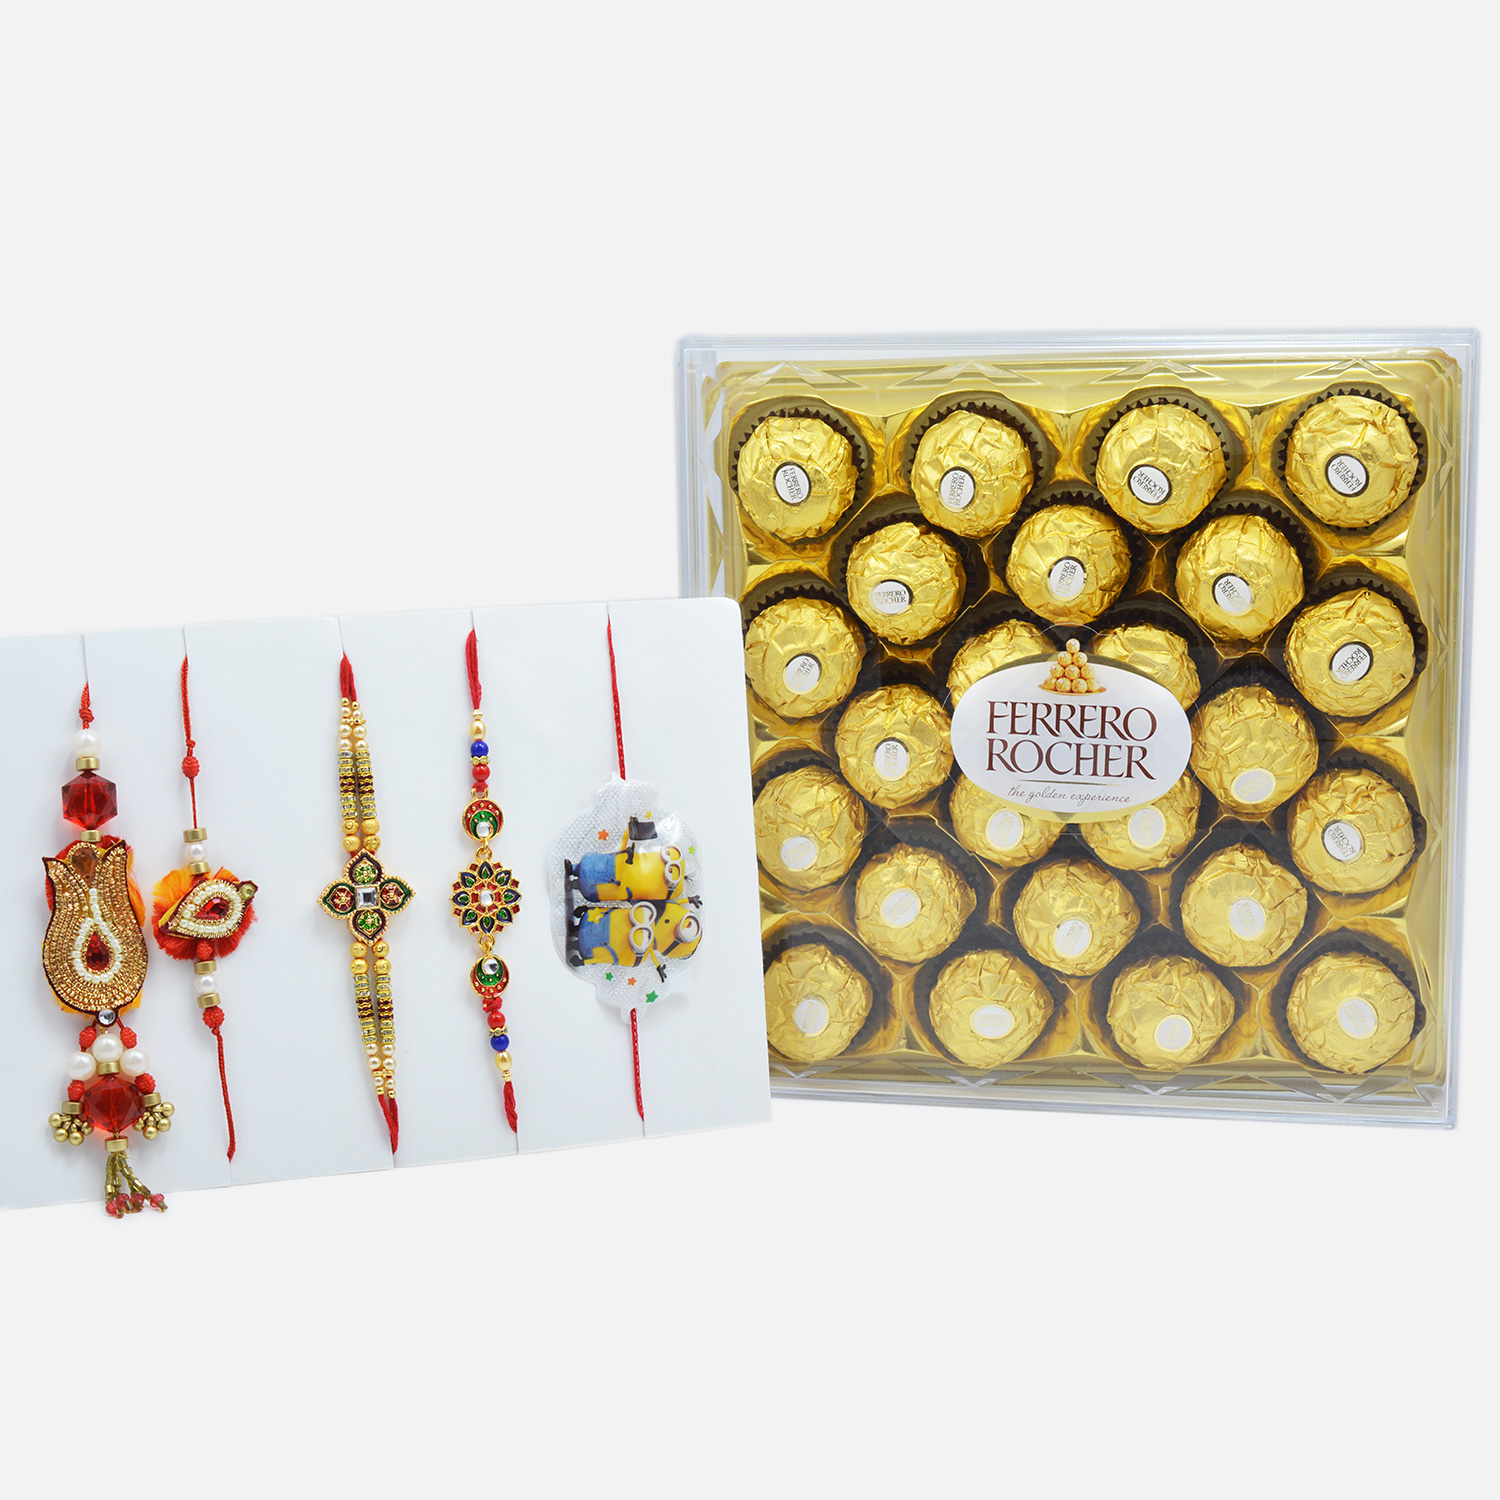 Italian Ferrero Rocher (24 pcs) with Elegant Bhaiya-Bhabhi Rakhi and Rakhi Set of 3